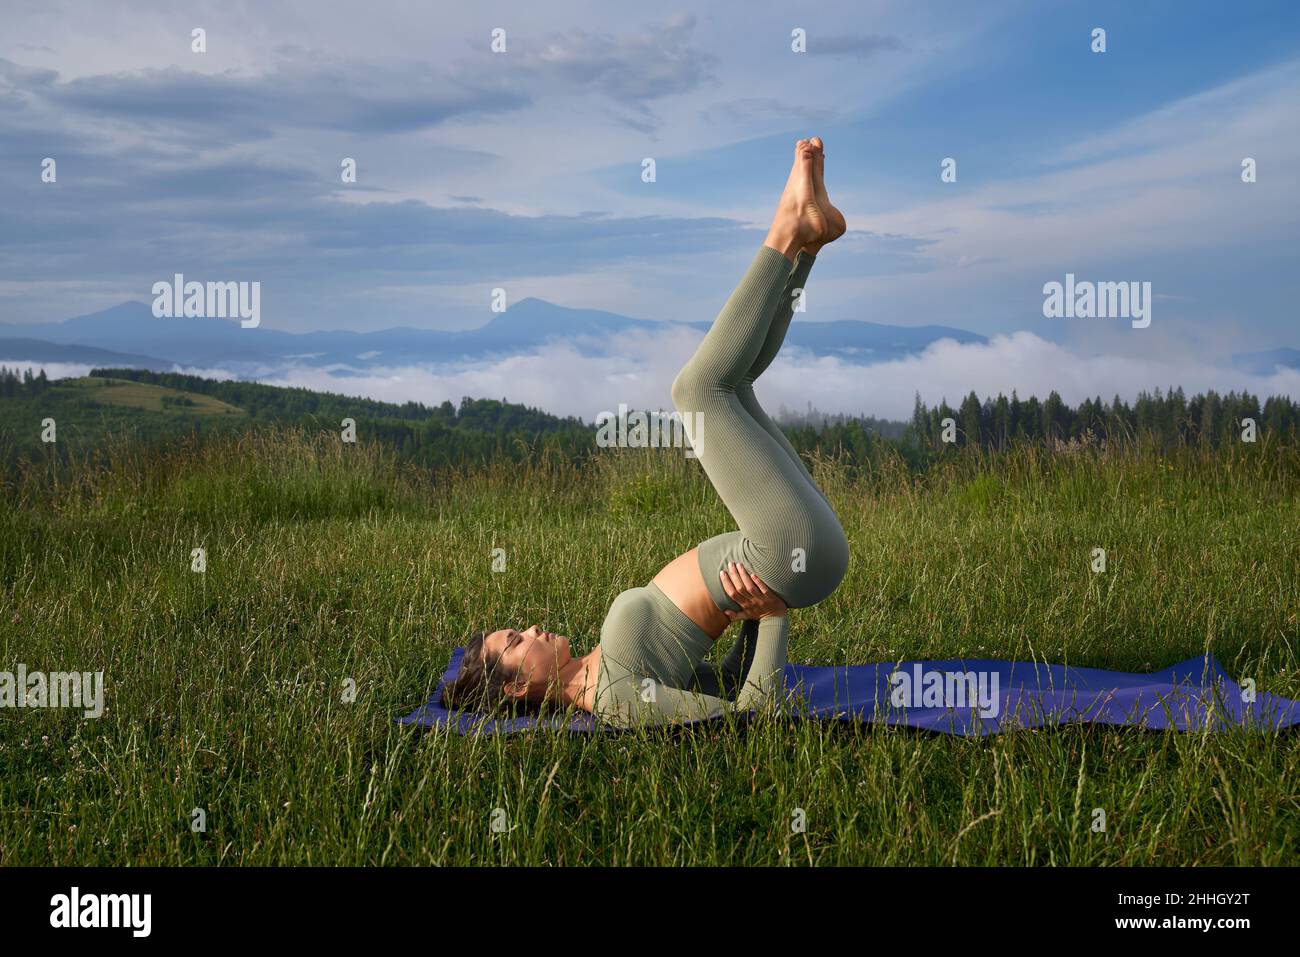 Junge Frau, die während des aktiven Trainings an der frischen Luft Gleichgewichtsübungen praktiziert. Weibliche Person, die morgens Zeit für das Training in den Sommerbergen verbringt. Stockfoto